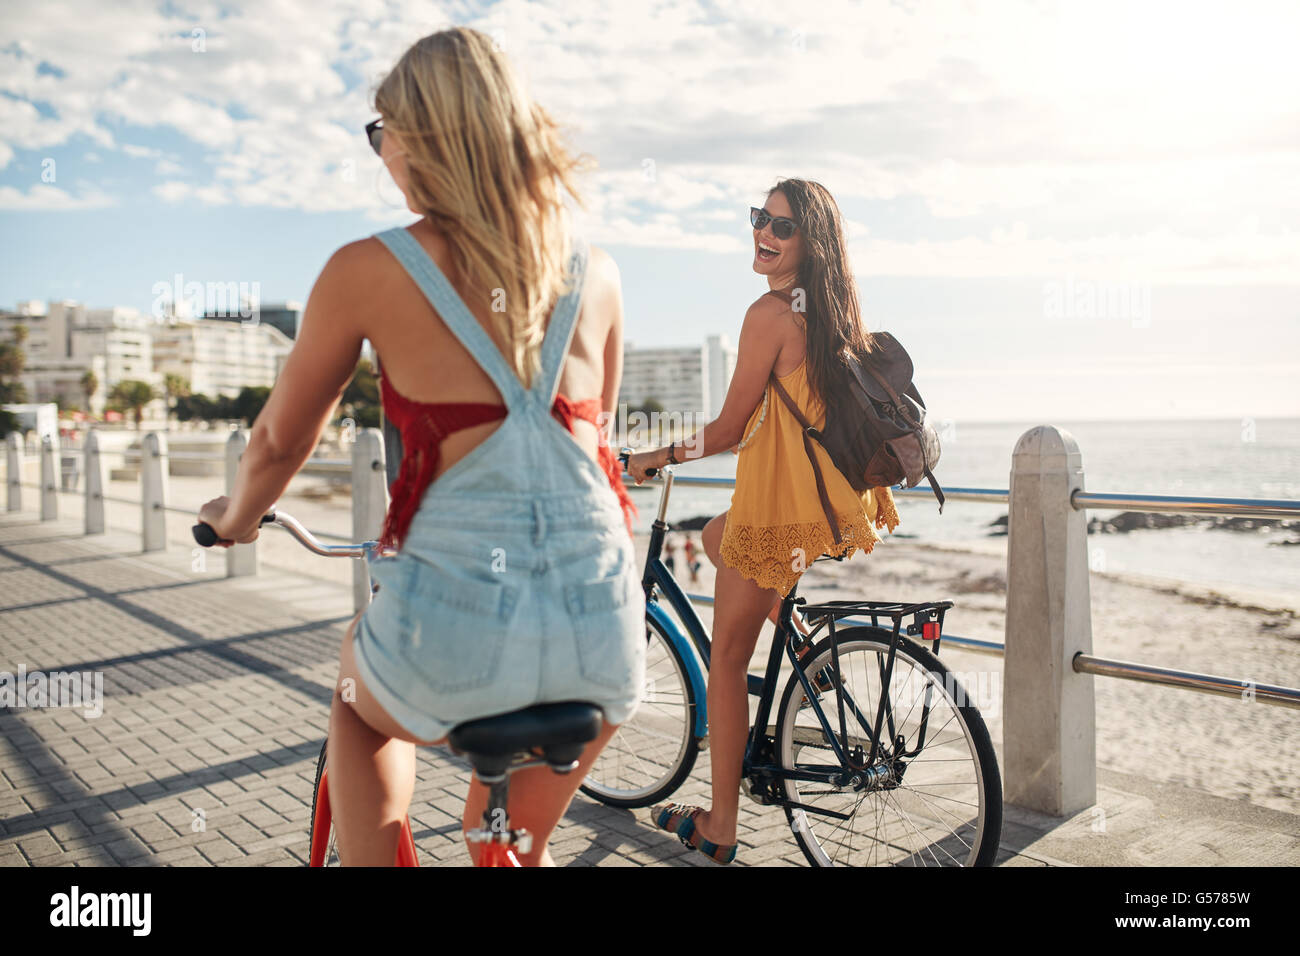 Vue arrière de deux jeunes femmes à vélo le long de la promenade du bord de mer. Meilleurs amis équitation sur leurs vélos par la mer Banque D'Images